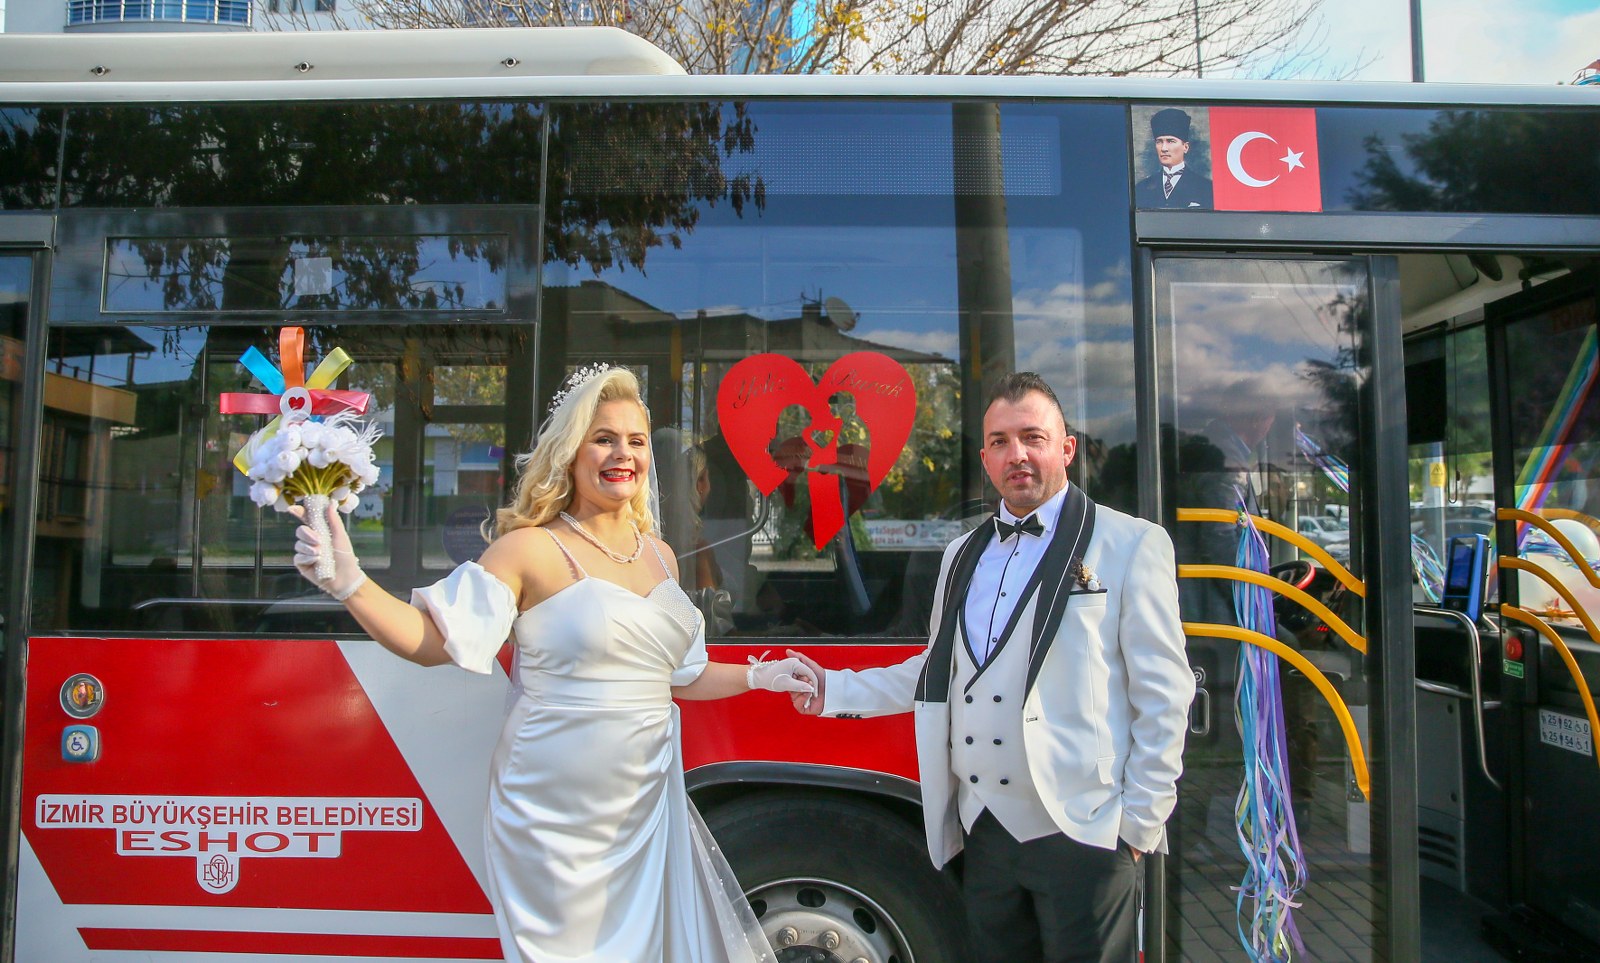 İzmir Büyükşehir Belediyesi otobüs işletmesi ESHOT'ta şoför olarak çalışan Yeliz Önemli ile Burak Bademli, bir süre önce evlilik kararı aldı.